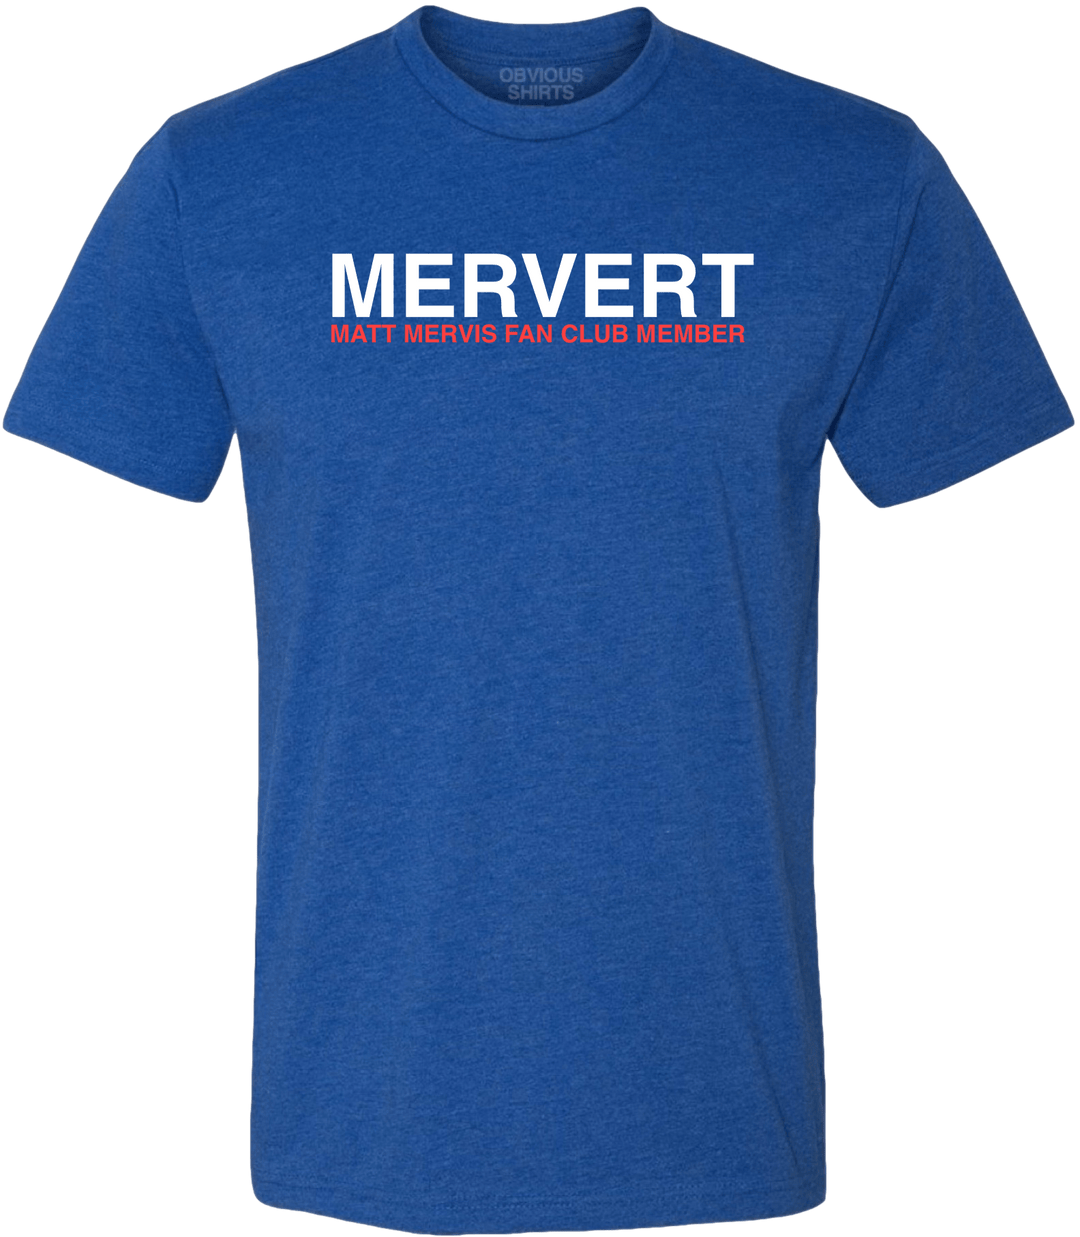 MERVERT (OFFICIAL FAN CLUB SHIRT) - OBVIOUS SHIRTS